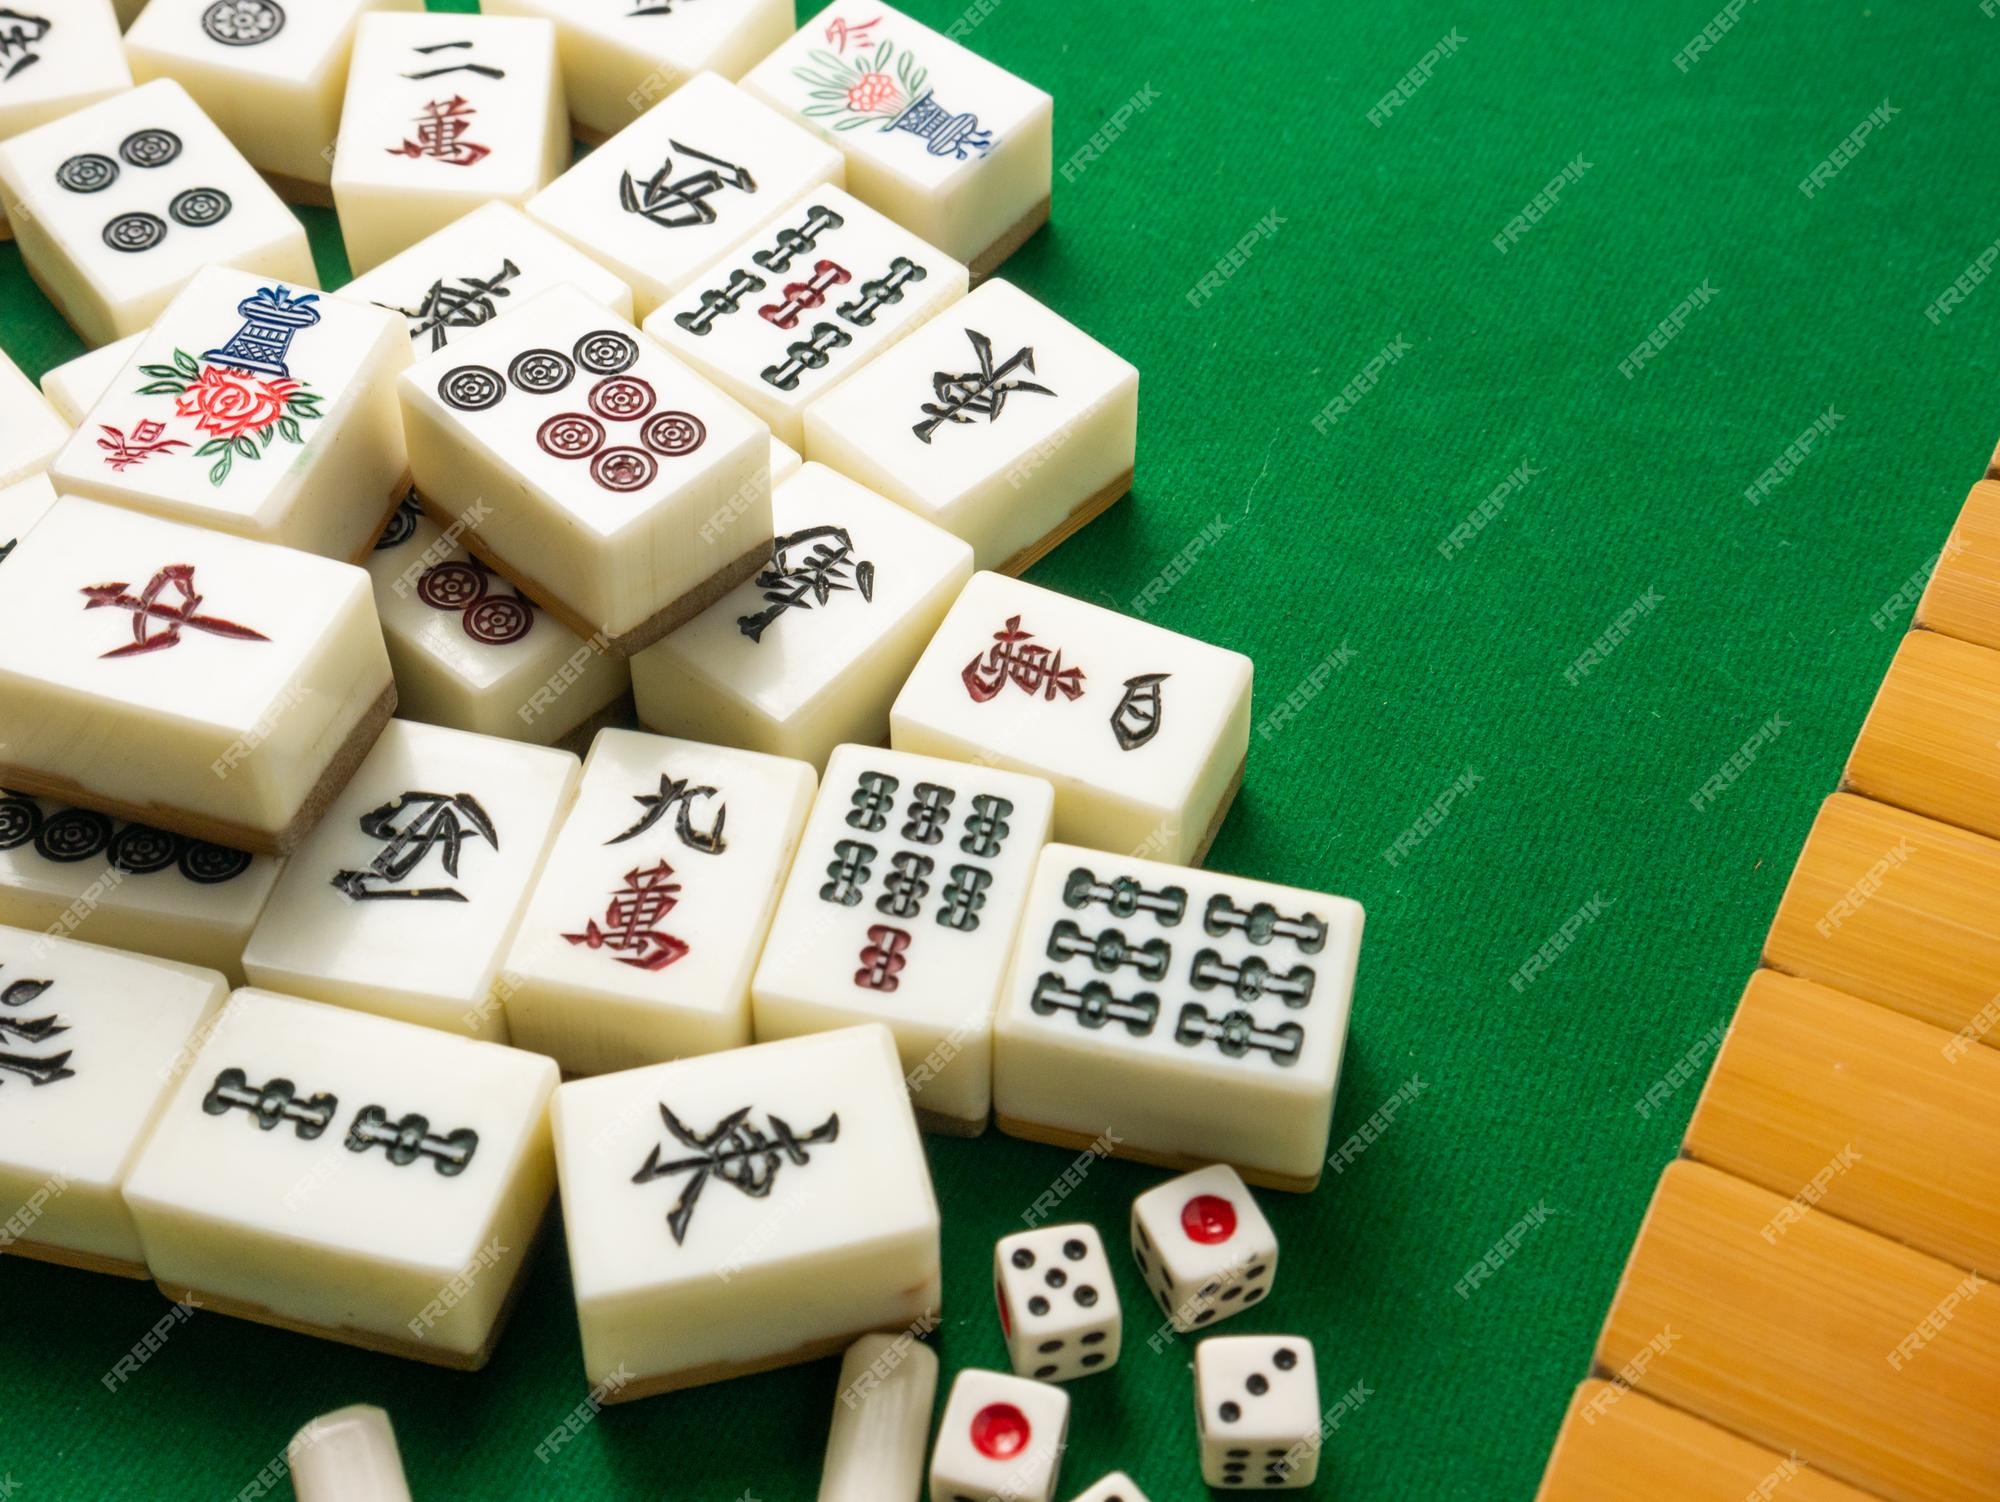 Jogo No Jogo De Mesa Do Mahjong Foto de Stock - Imagem de verde, mesa:  144770258